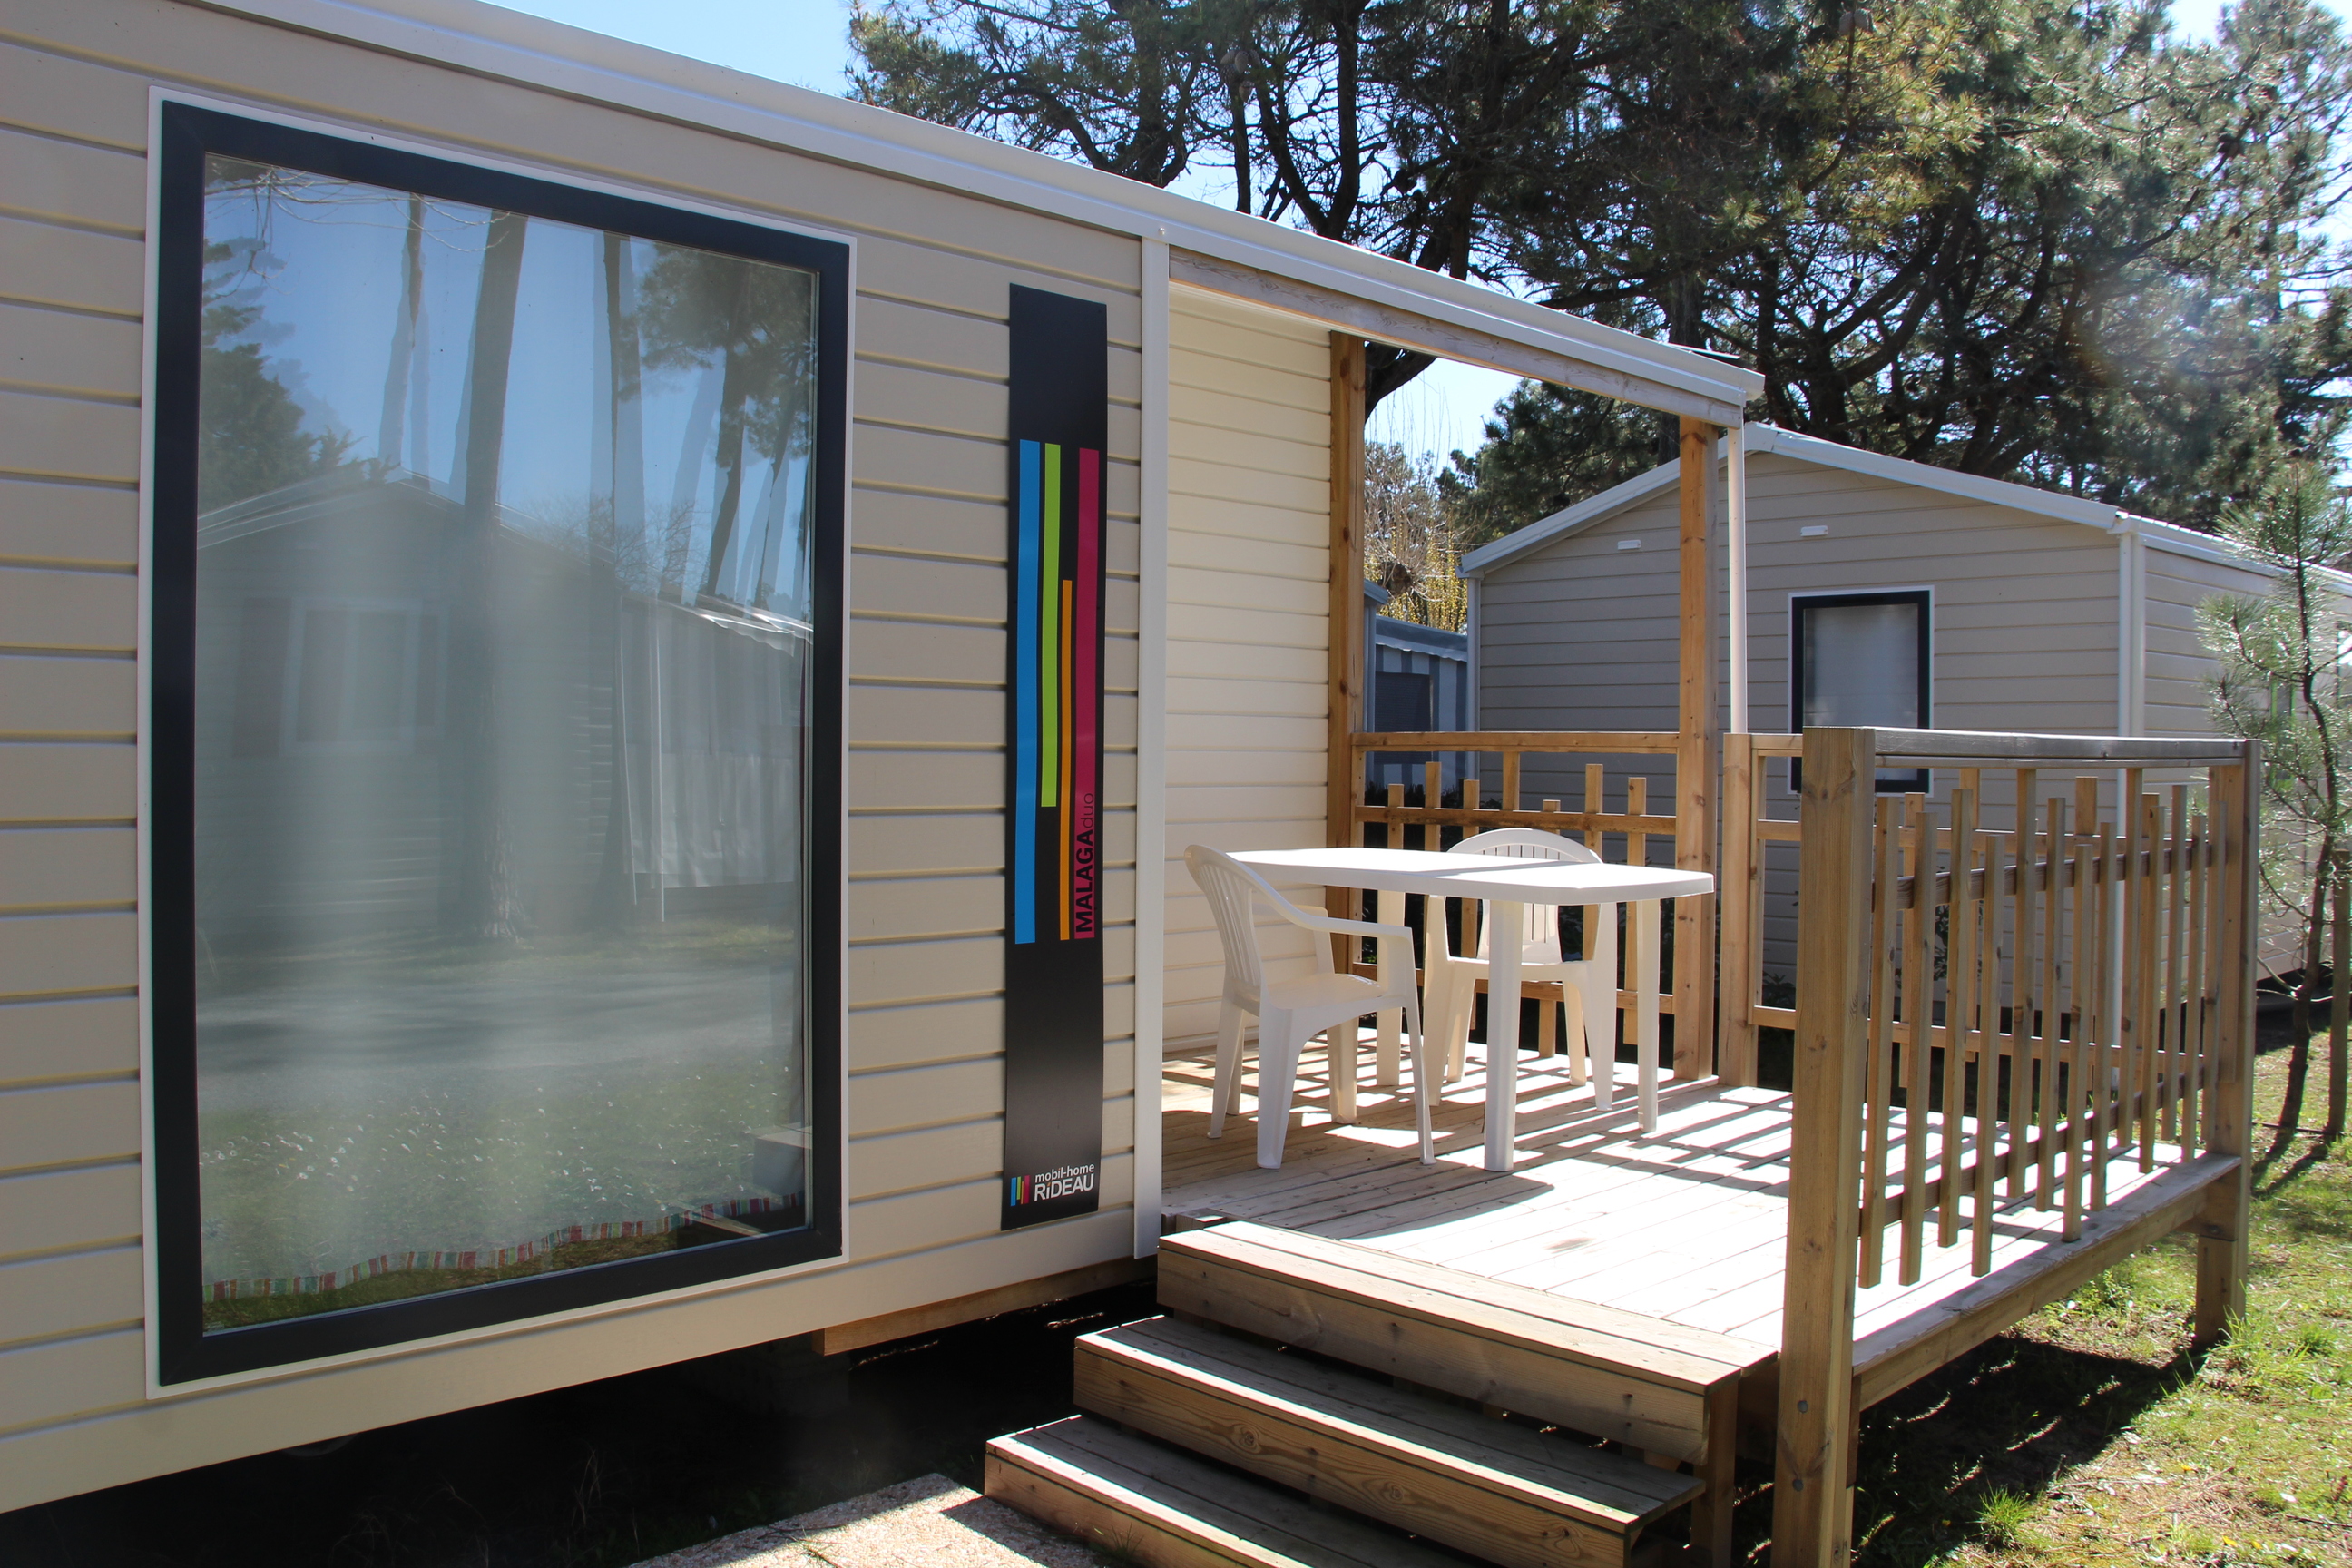 Mobil-home MALAGA 27m² - 2 chambres (modèles 2016 et 2017) avec terrasse bois semi couverte.